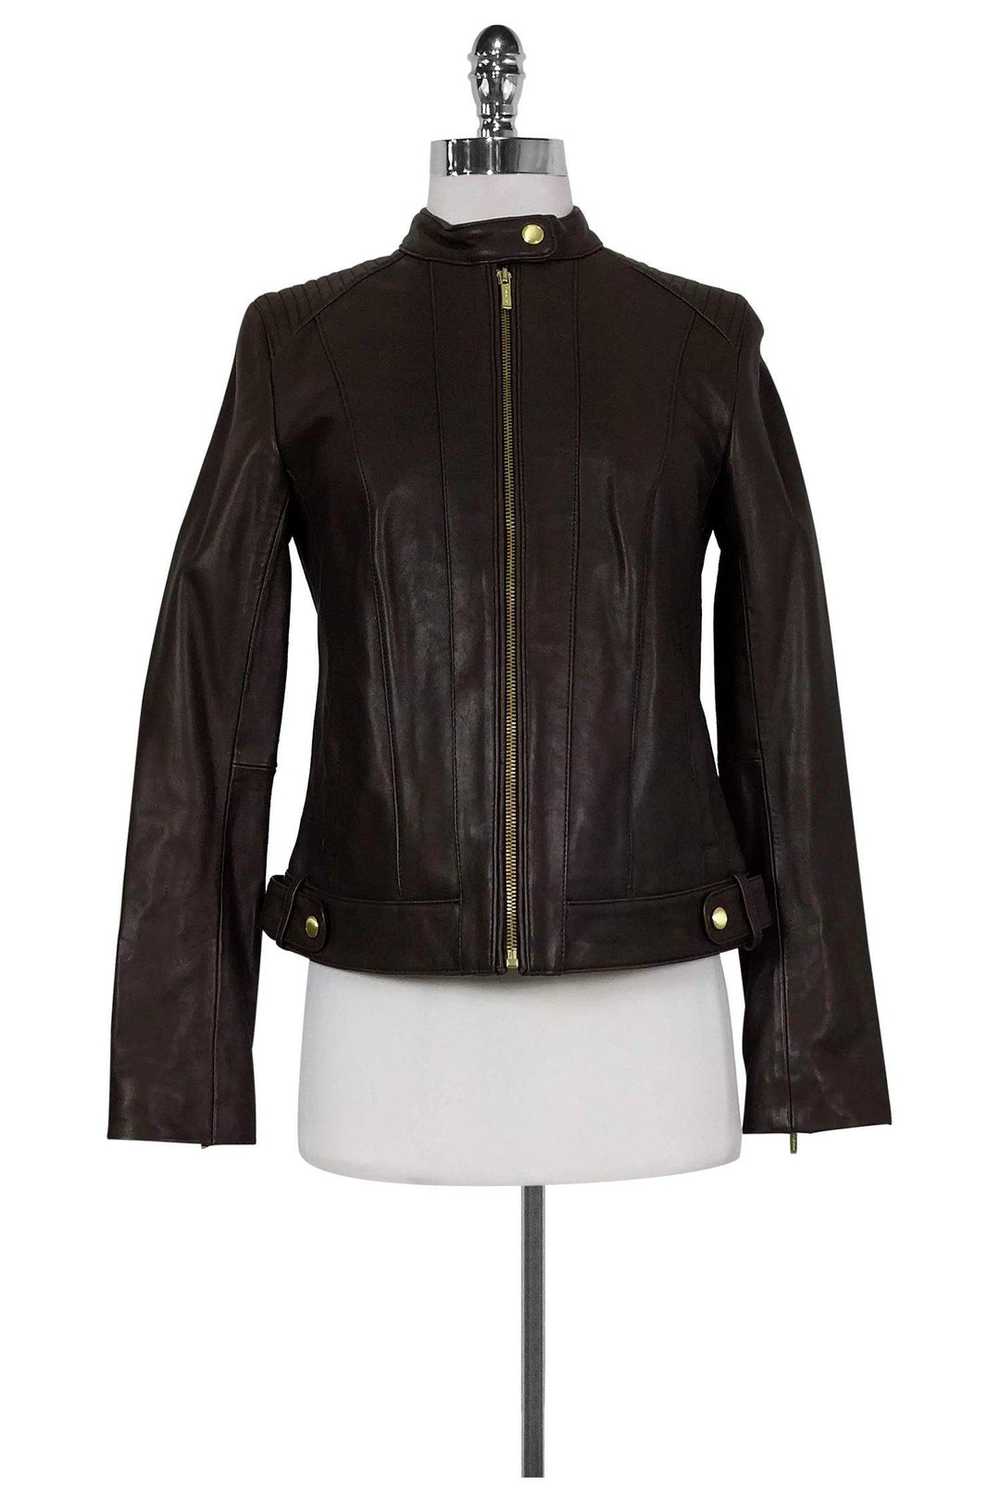 Cole Haan - Brown Leather Zip Jacket Sz S - image 1